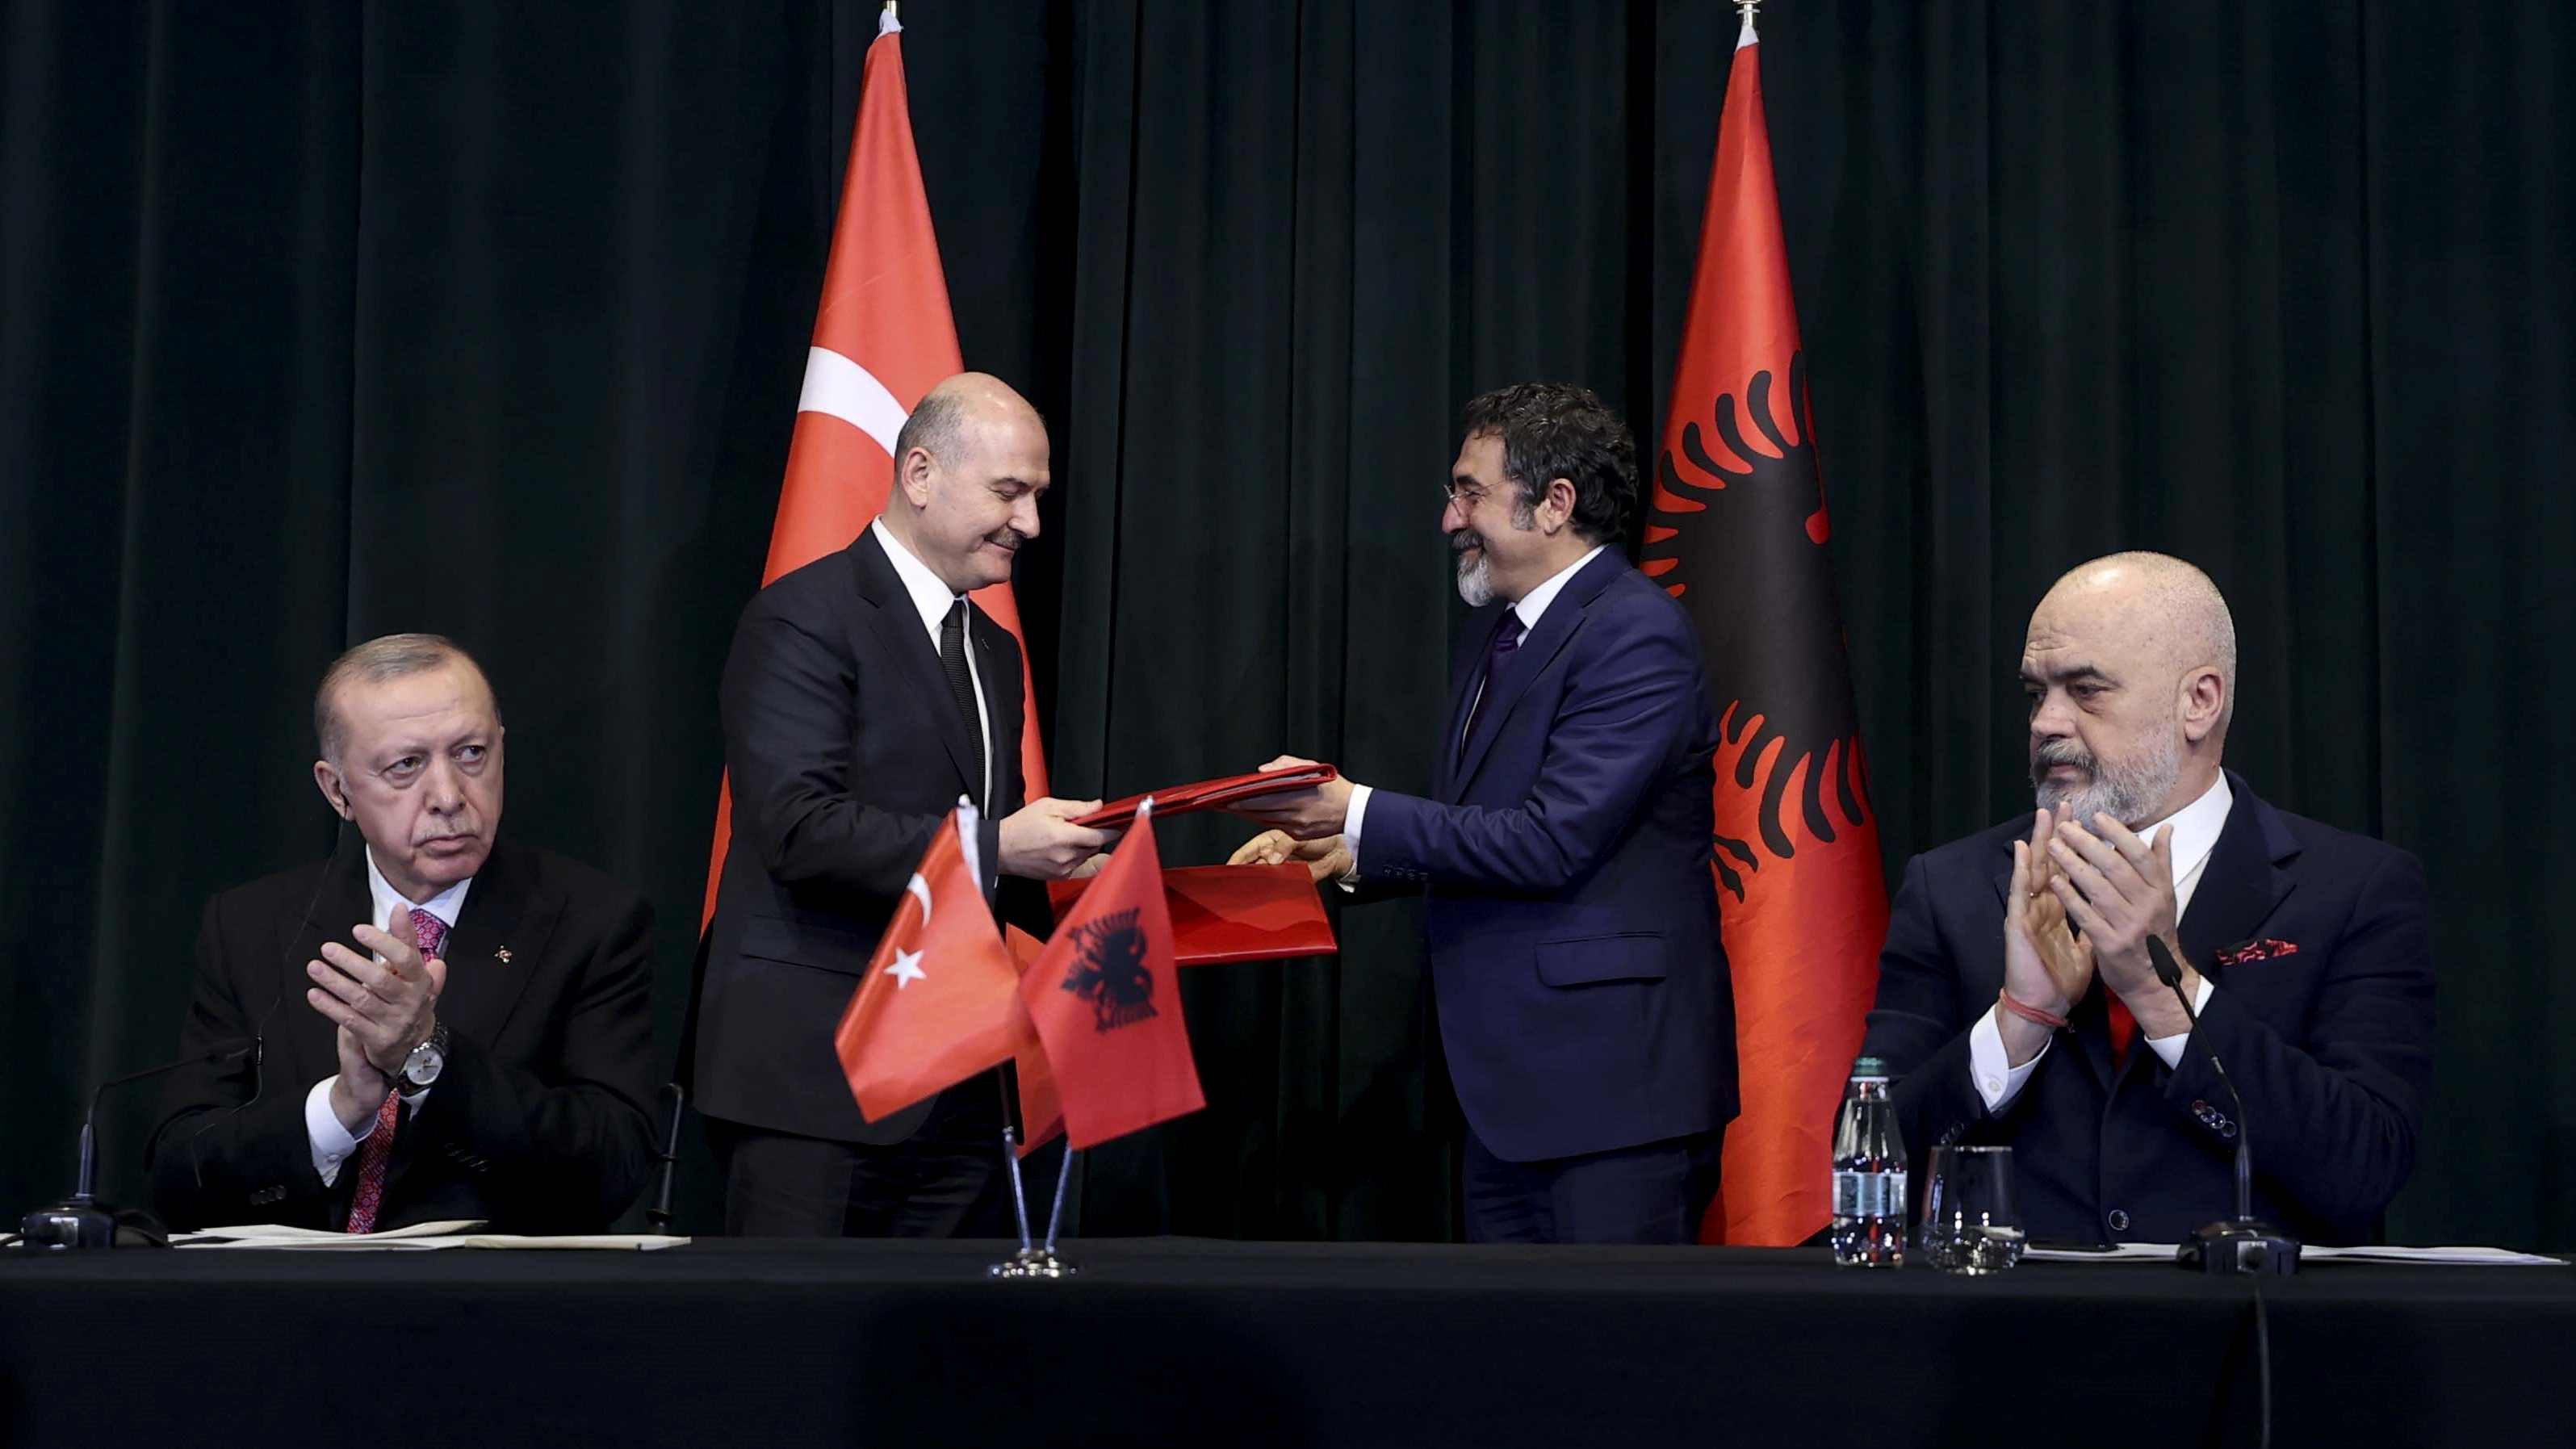 Türkiye ile Arnavutluk arasında 7 anlaşma imzalandı